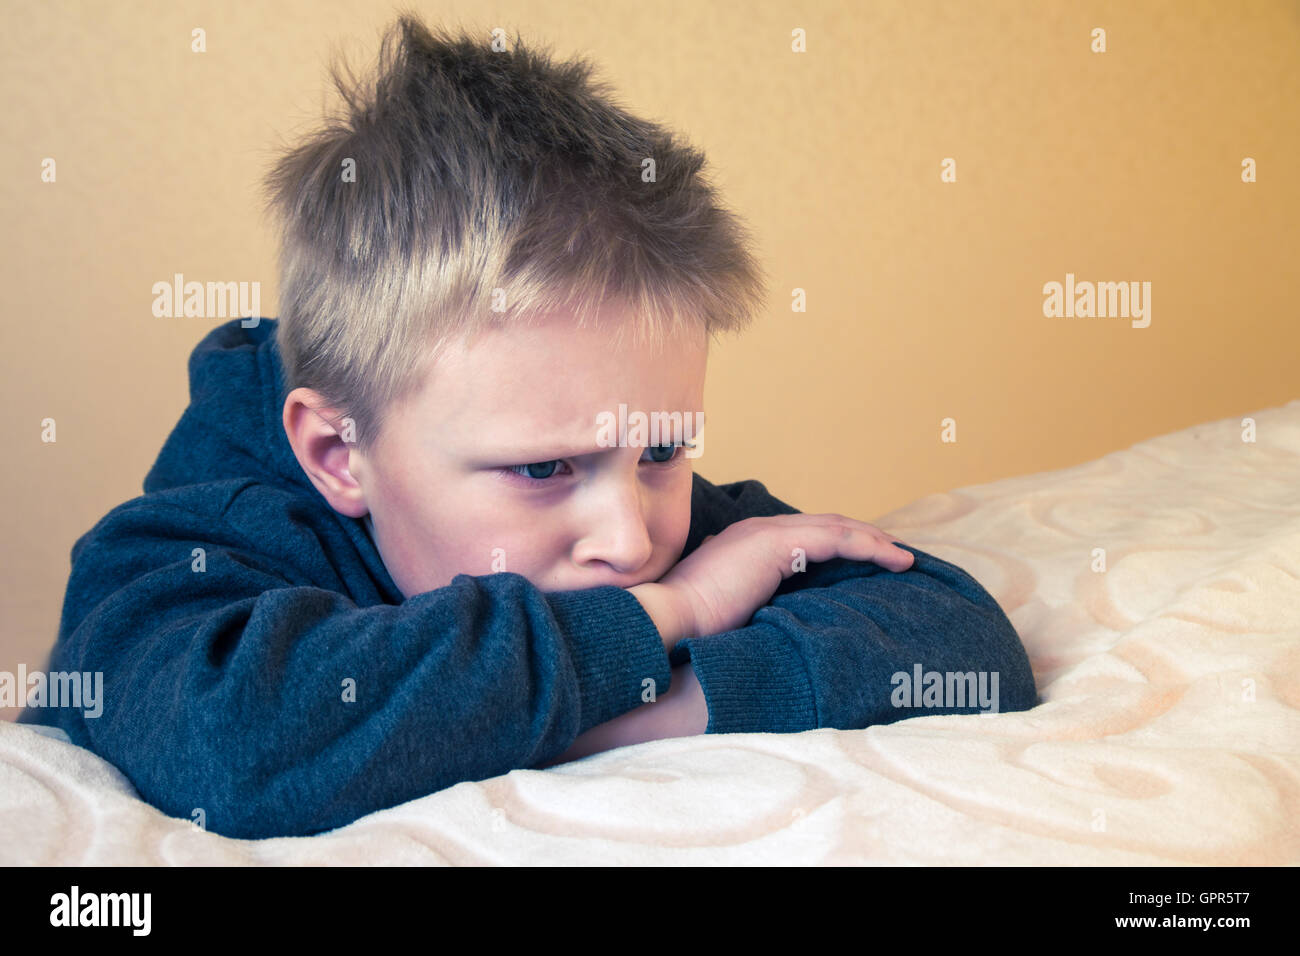 Triste arrabbiato stanco preoccupato infelice kid (boy, teen) close up ritratto con spazio di copia Foto Stock